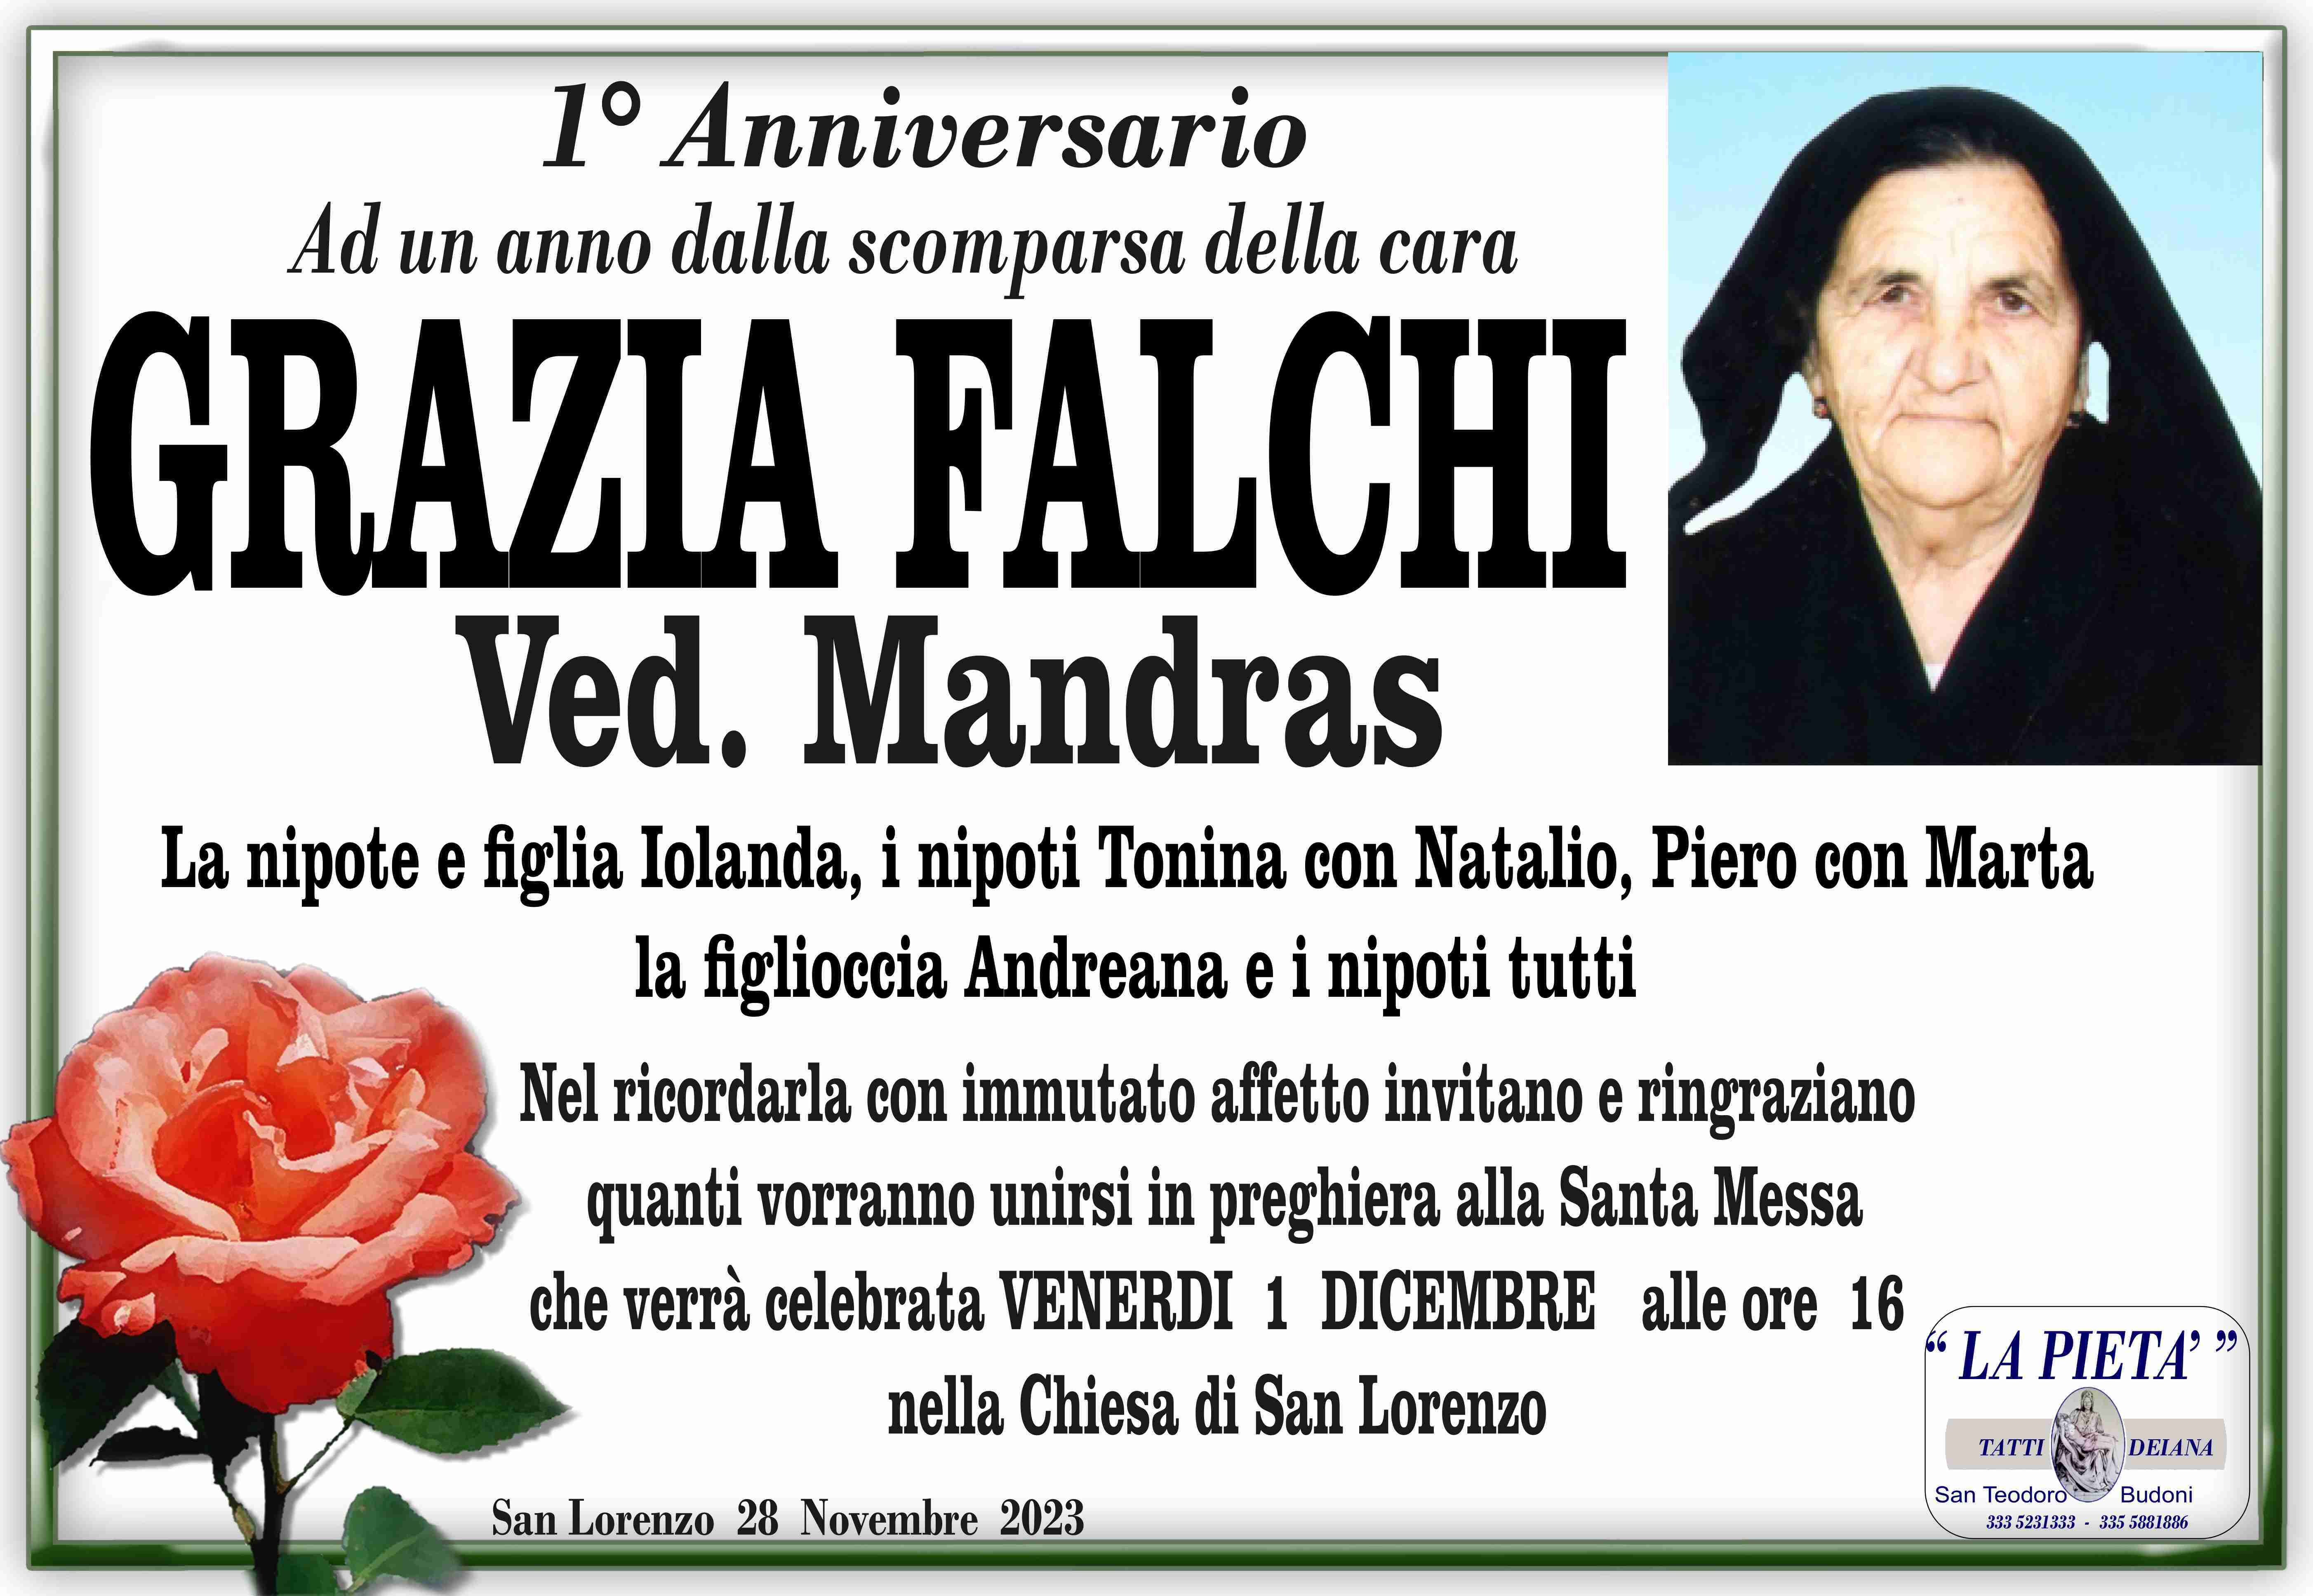 Grazia Falchi